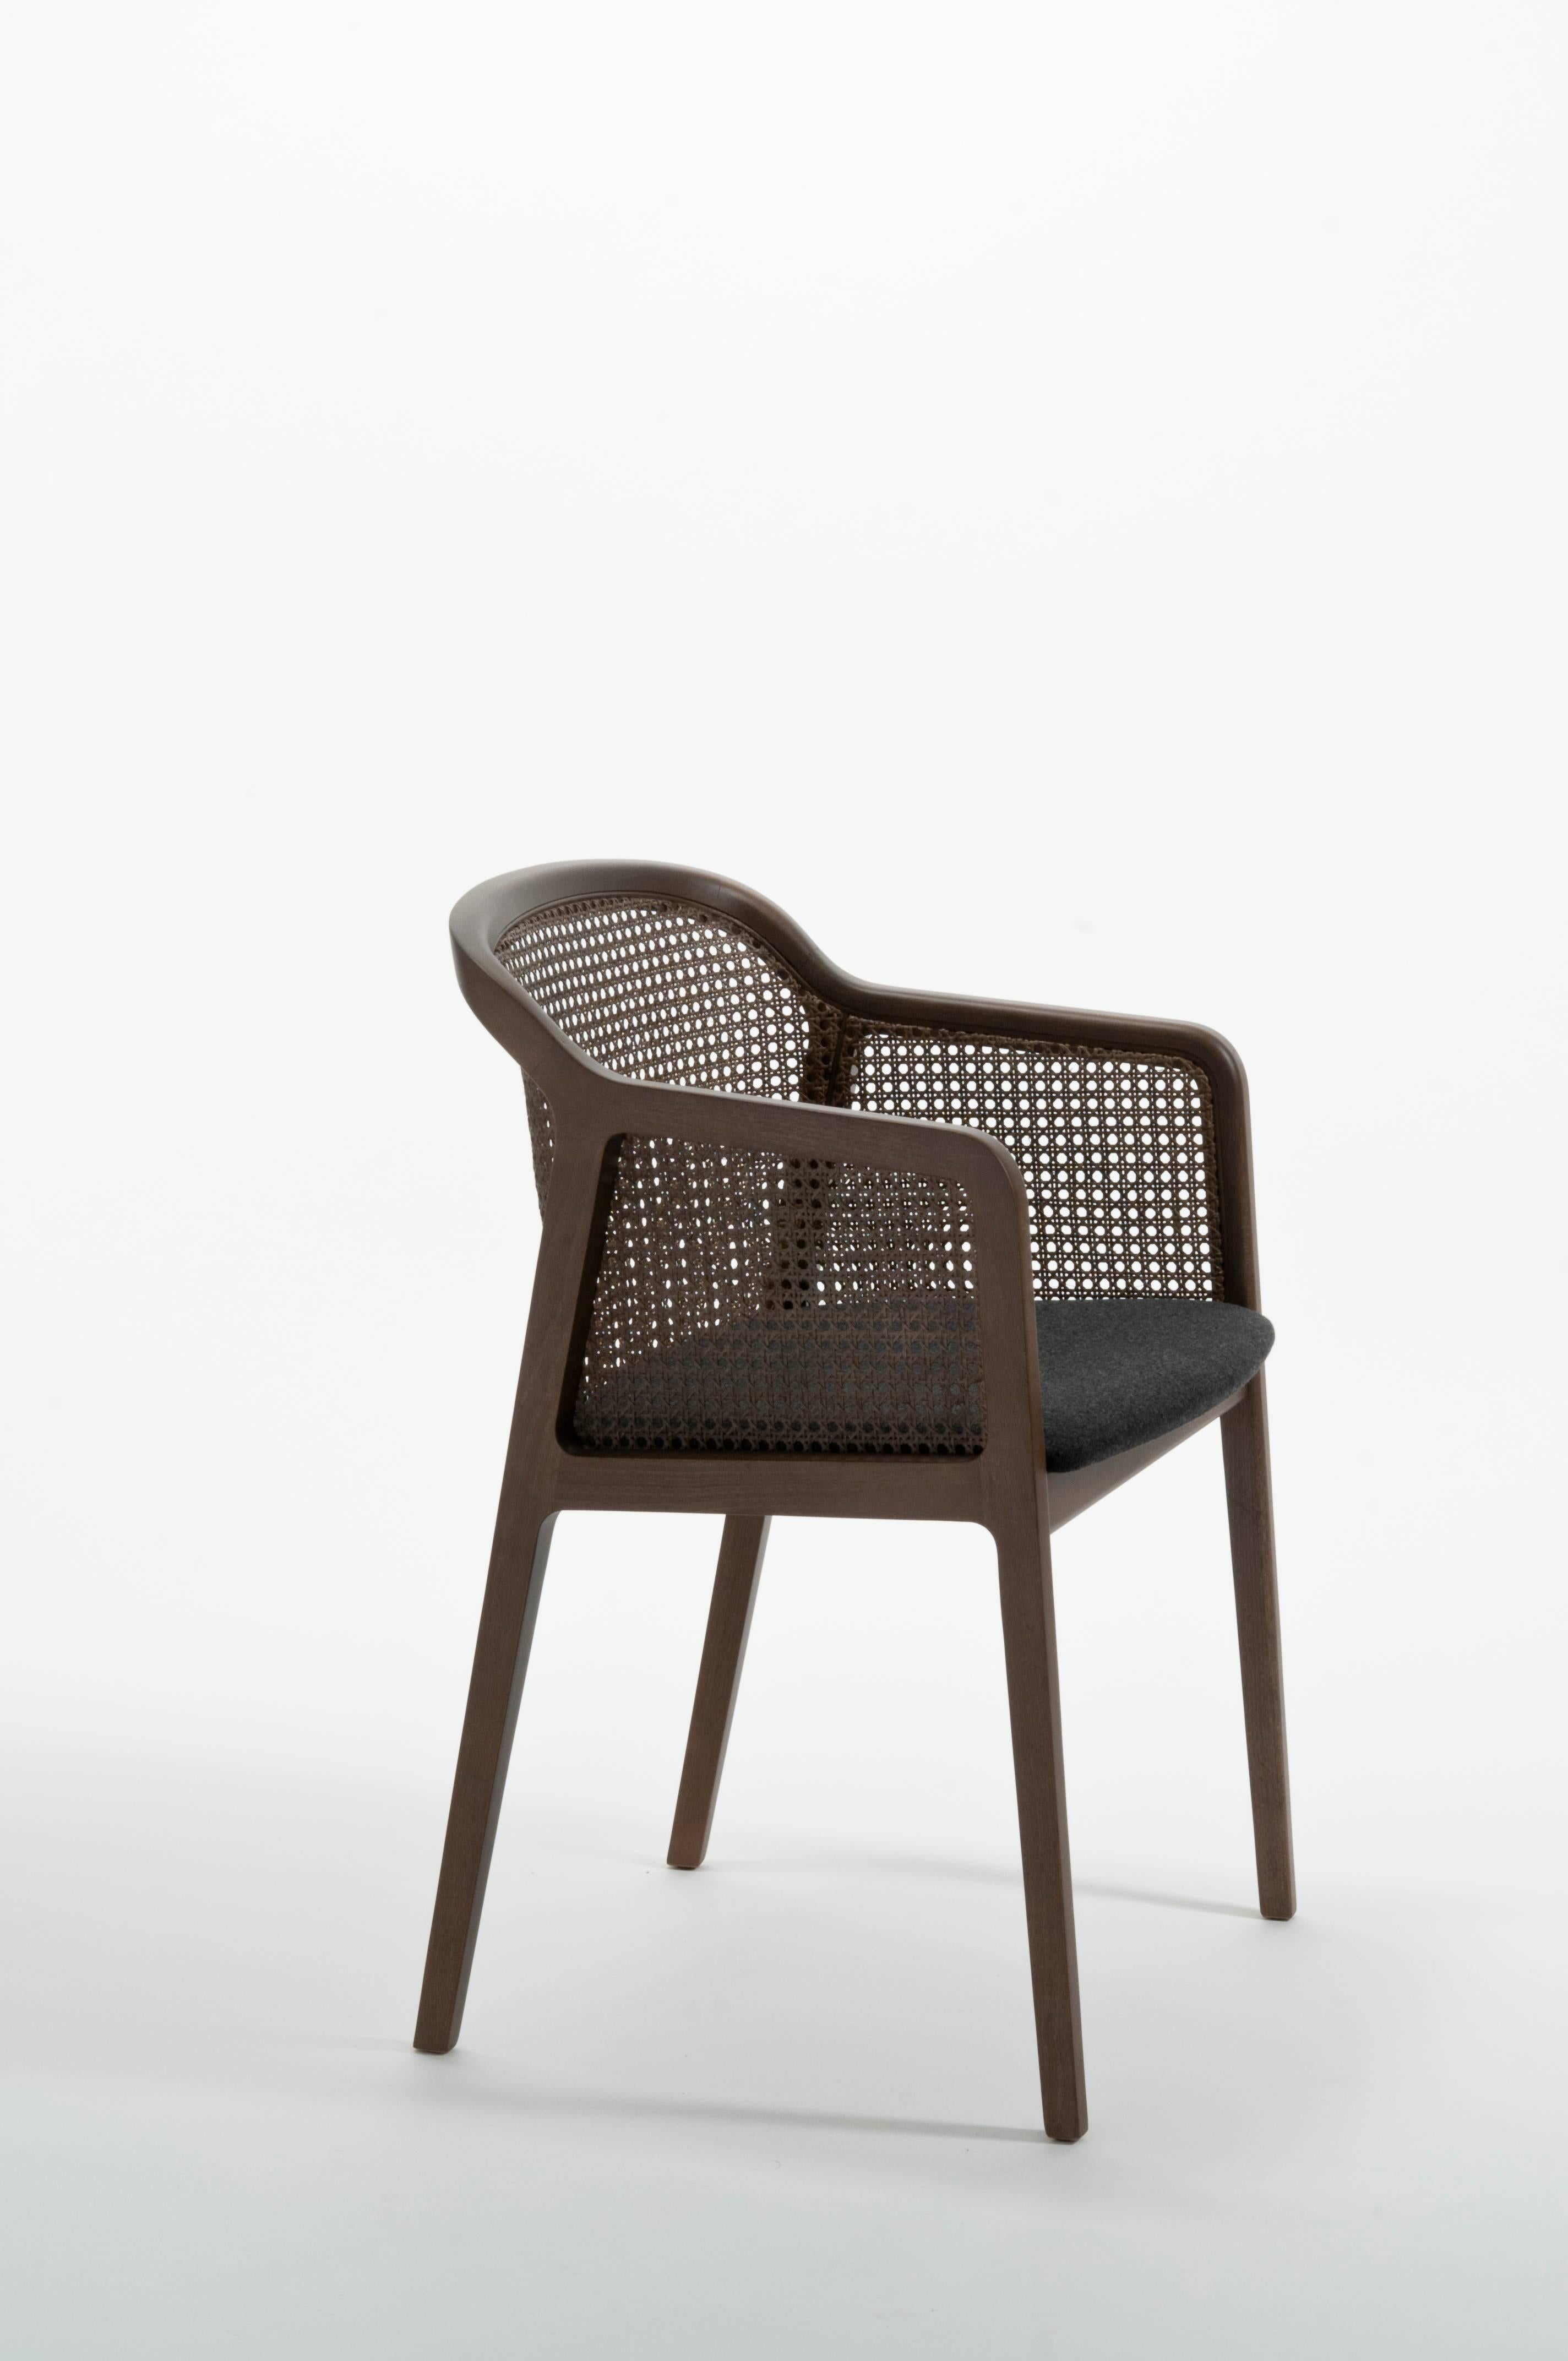 Vienna ist ein außerordentlich komfortabler und eleganter Sessel, der von Emmanuel Gallina entworfen wurde, der gerne Brancusi zitiert, wenn er sagt, dass 